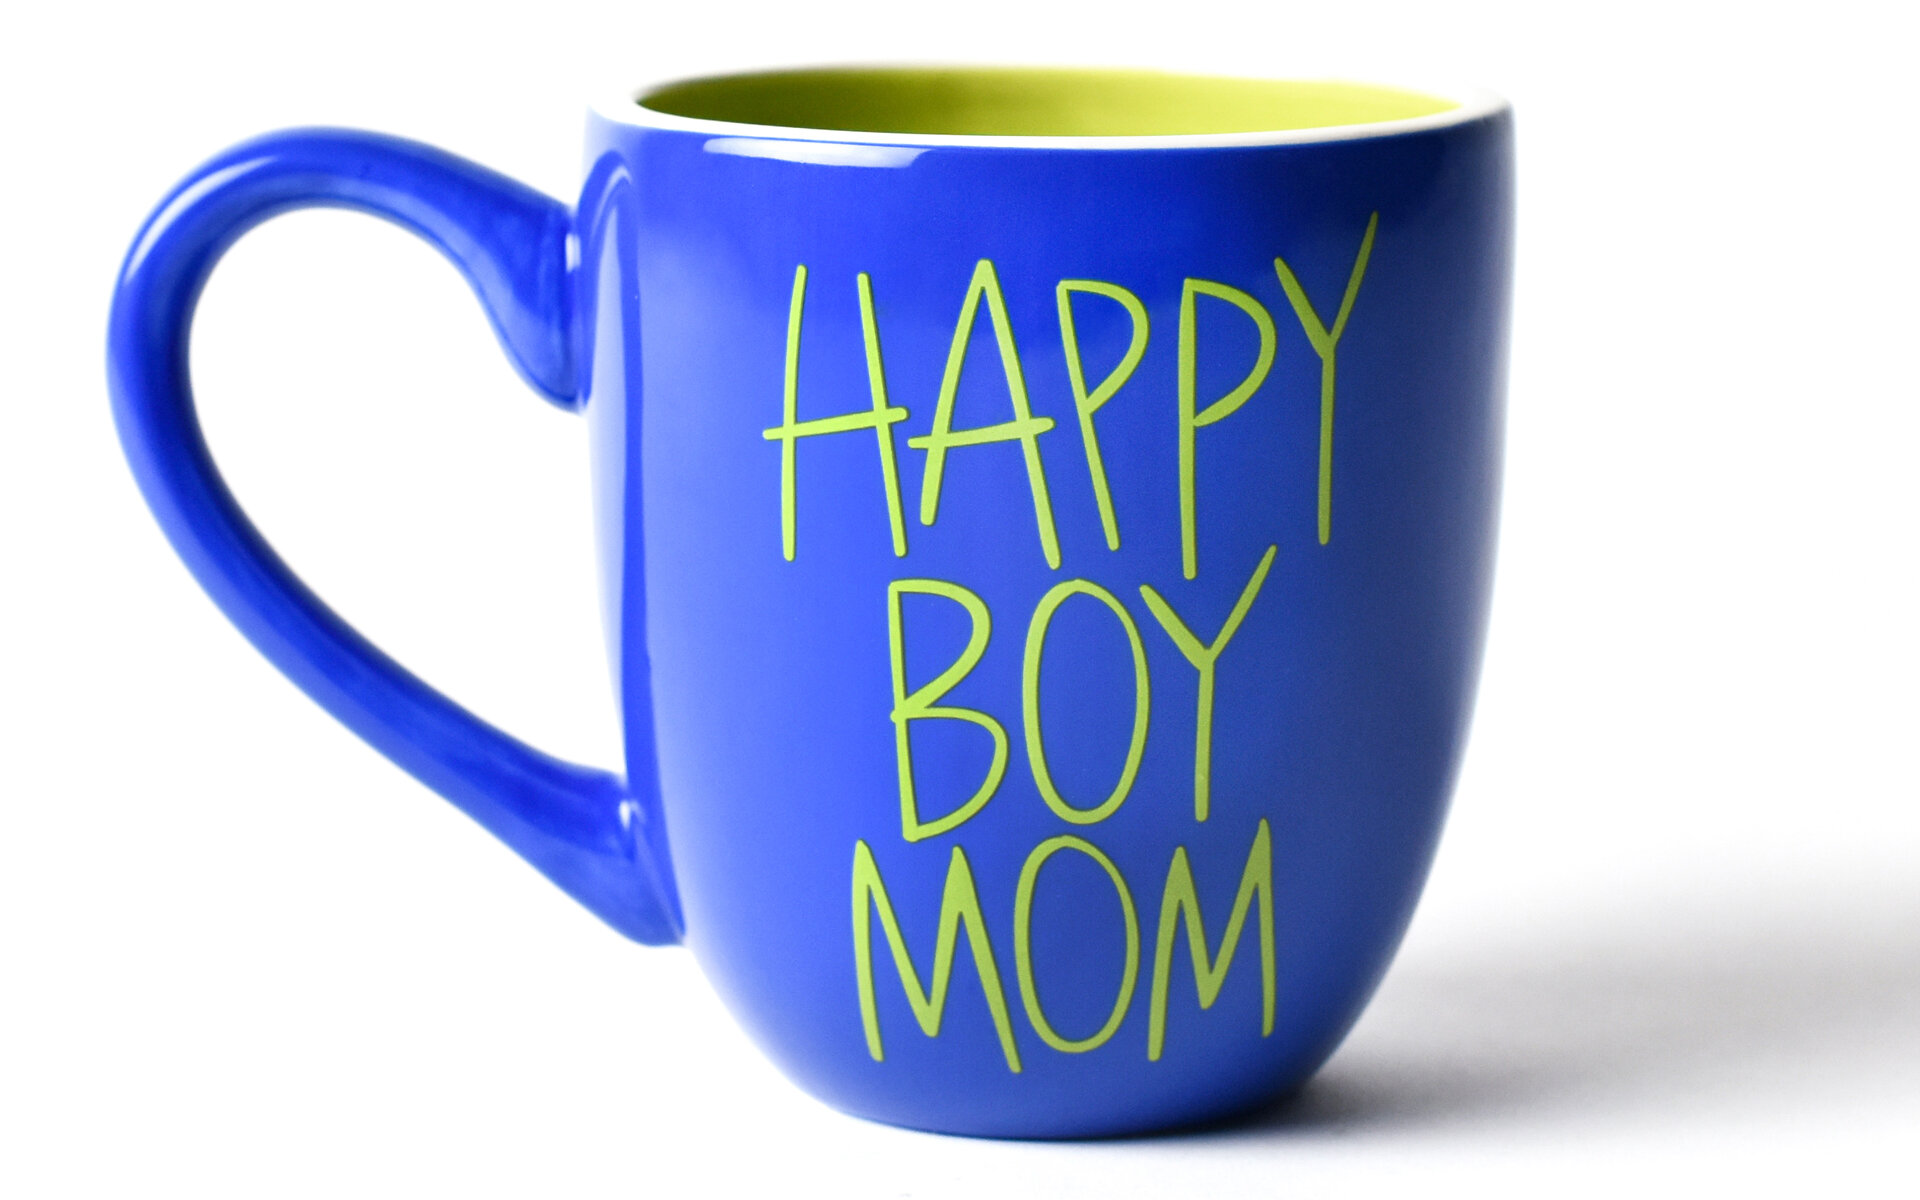 Boy Mom' Mug